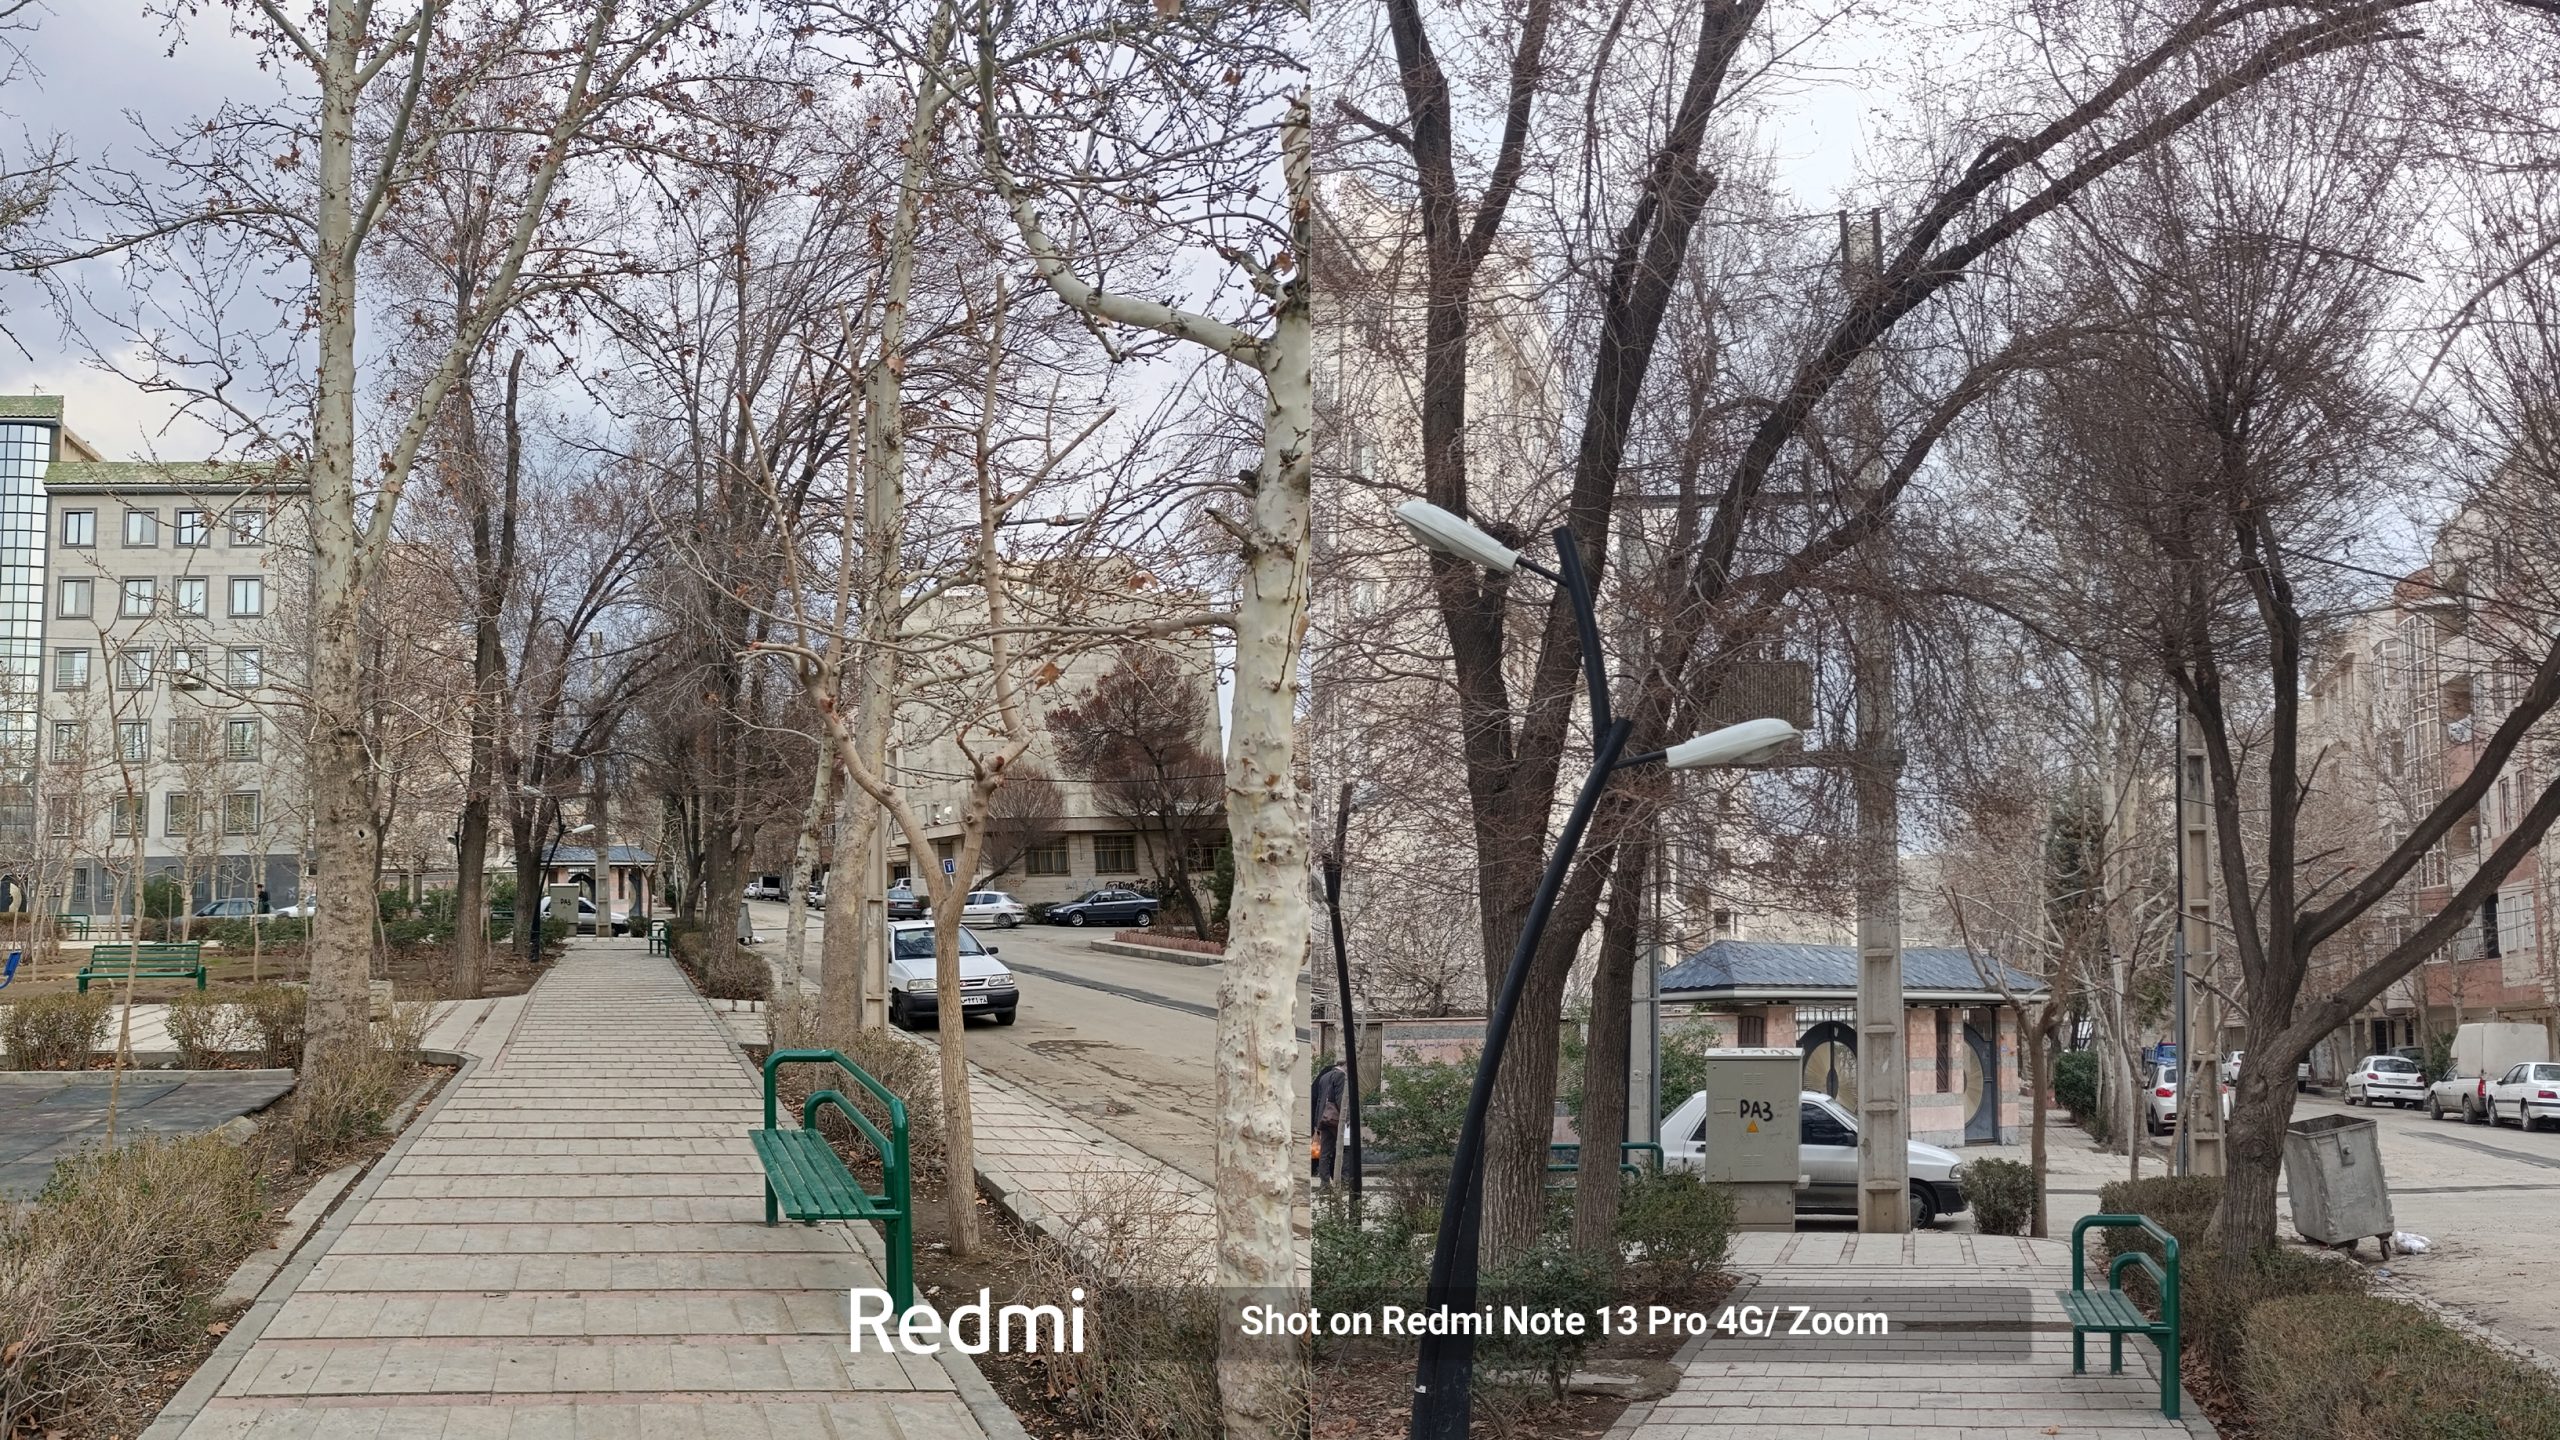 Shot on Redmi Note 13 Pro 4G Zoom